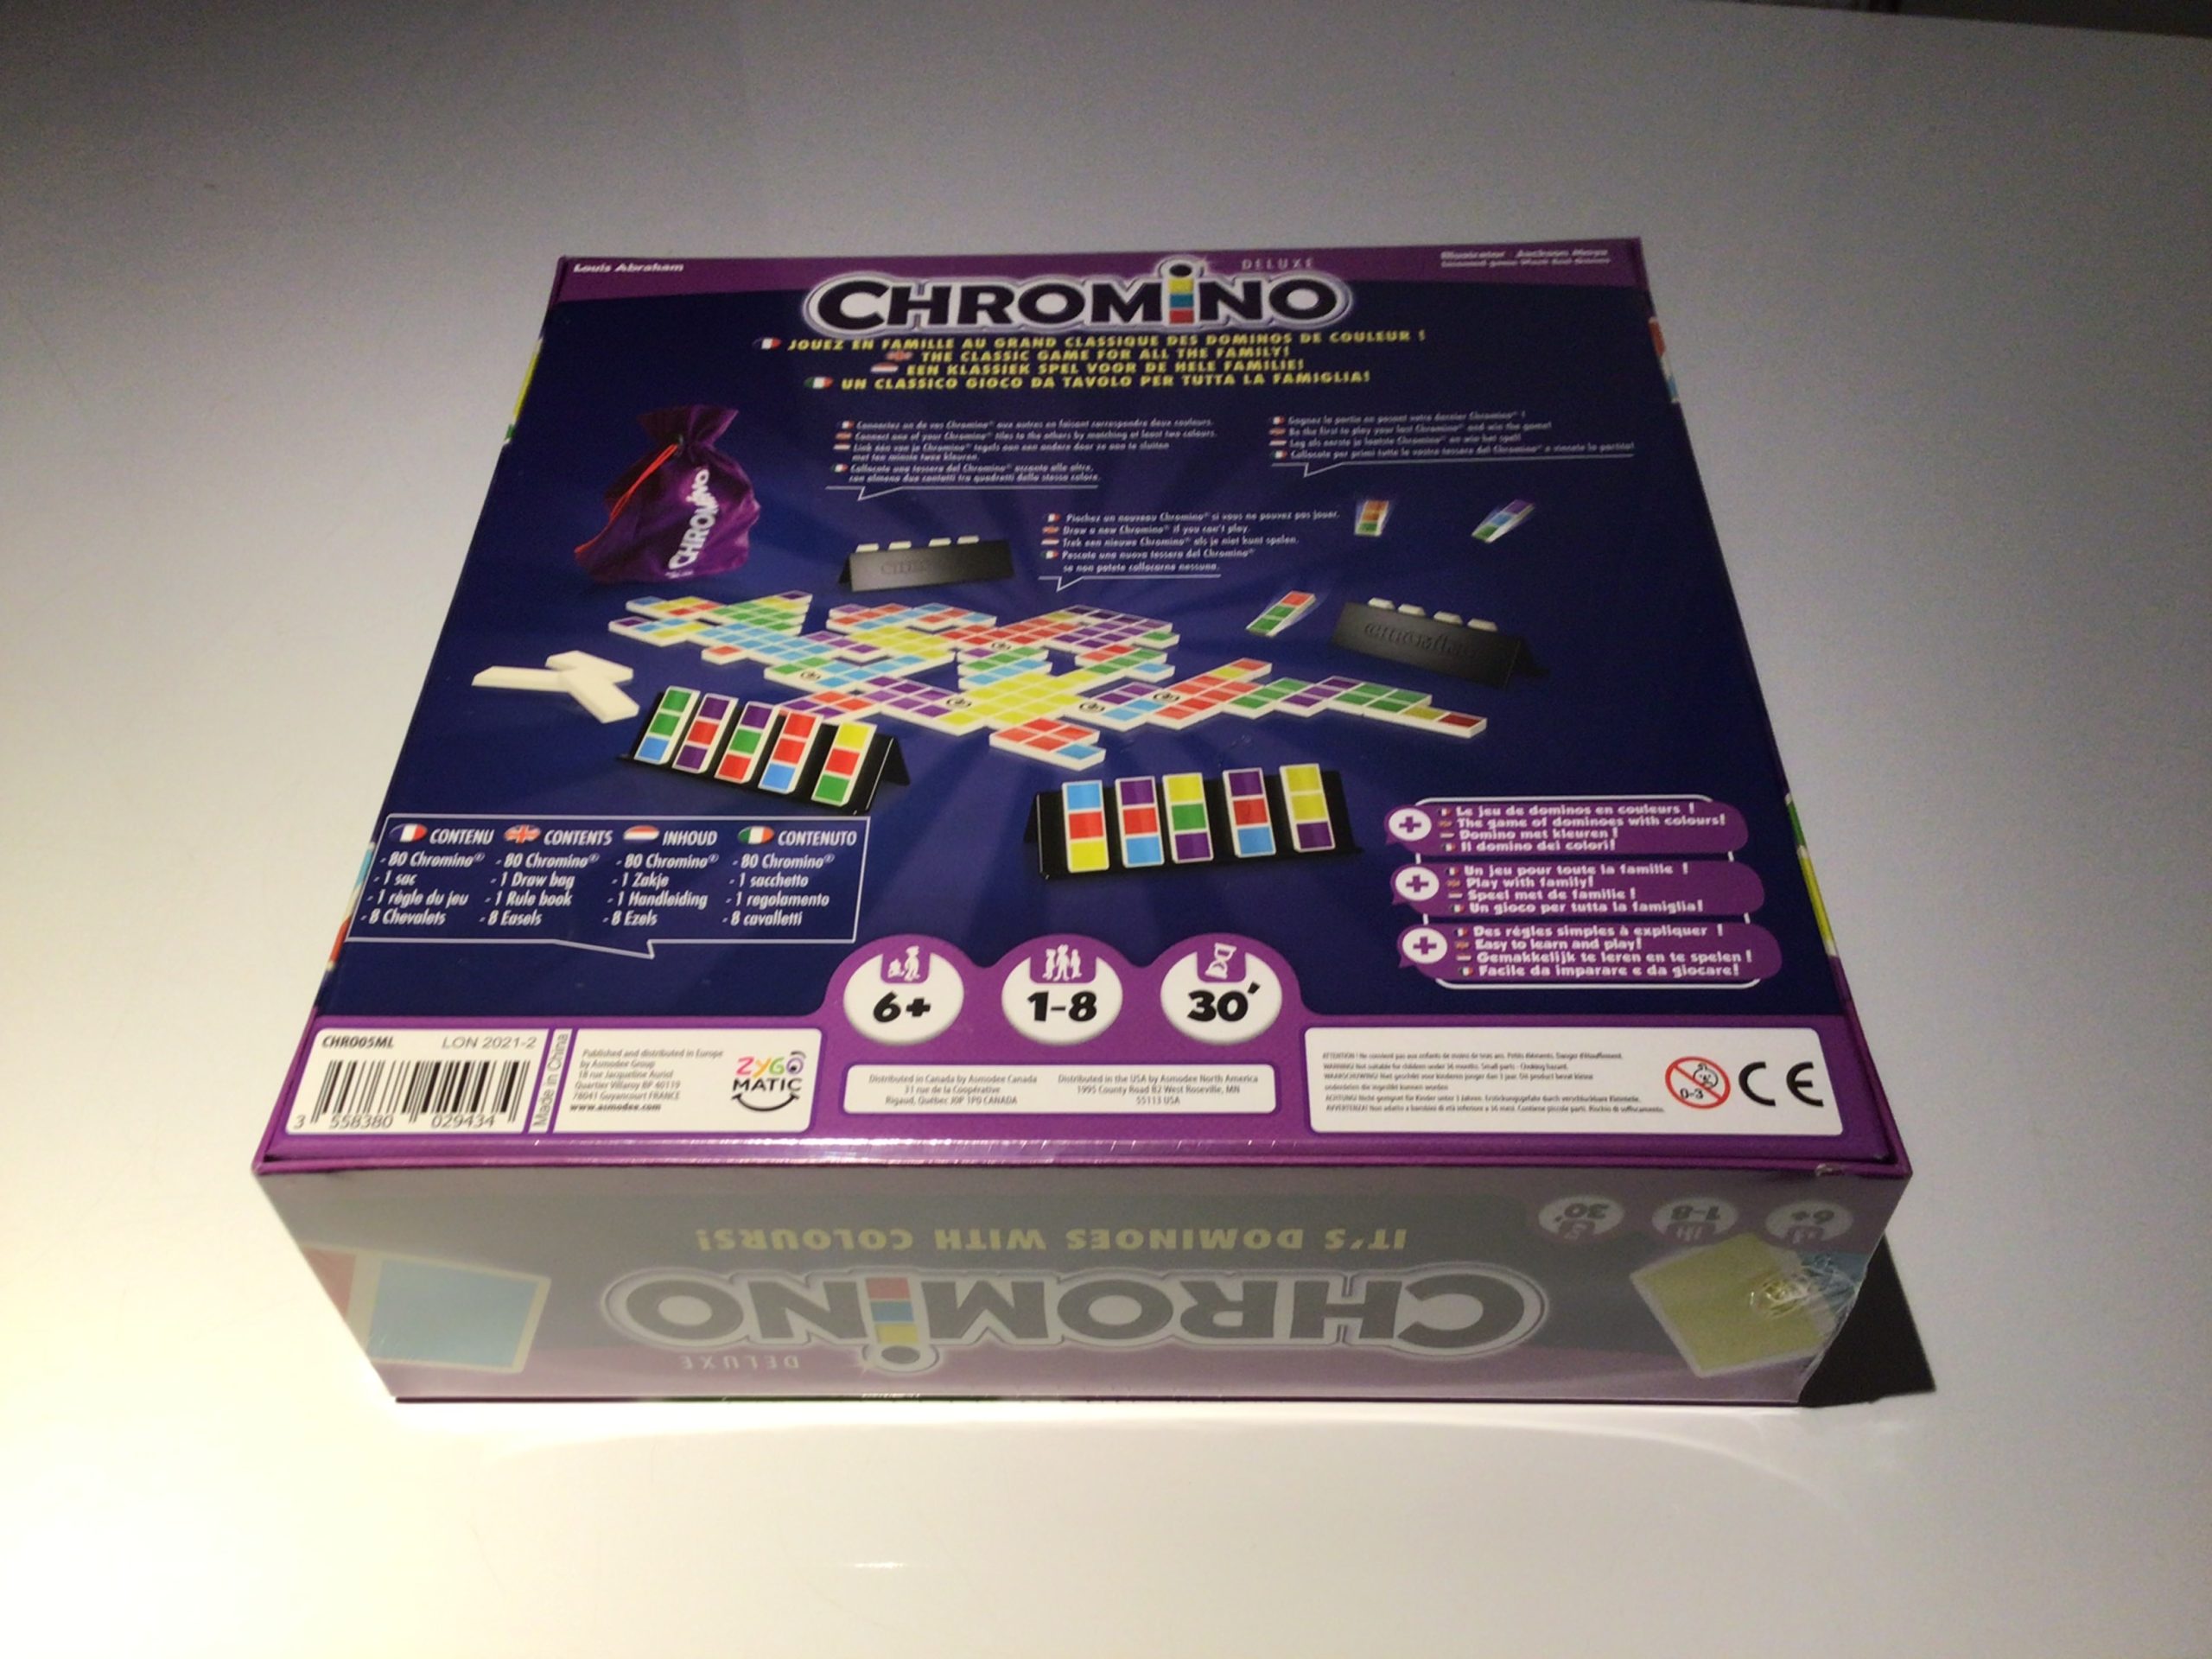 Chromino – Jeu de dominos de couleur familial et règle simple